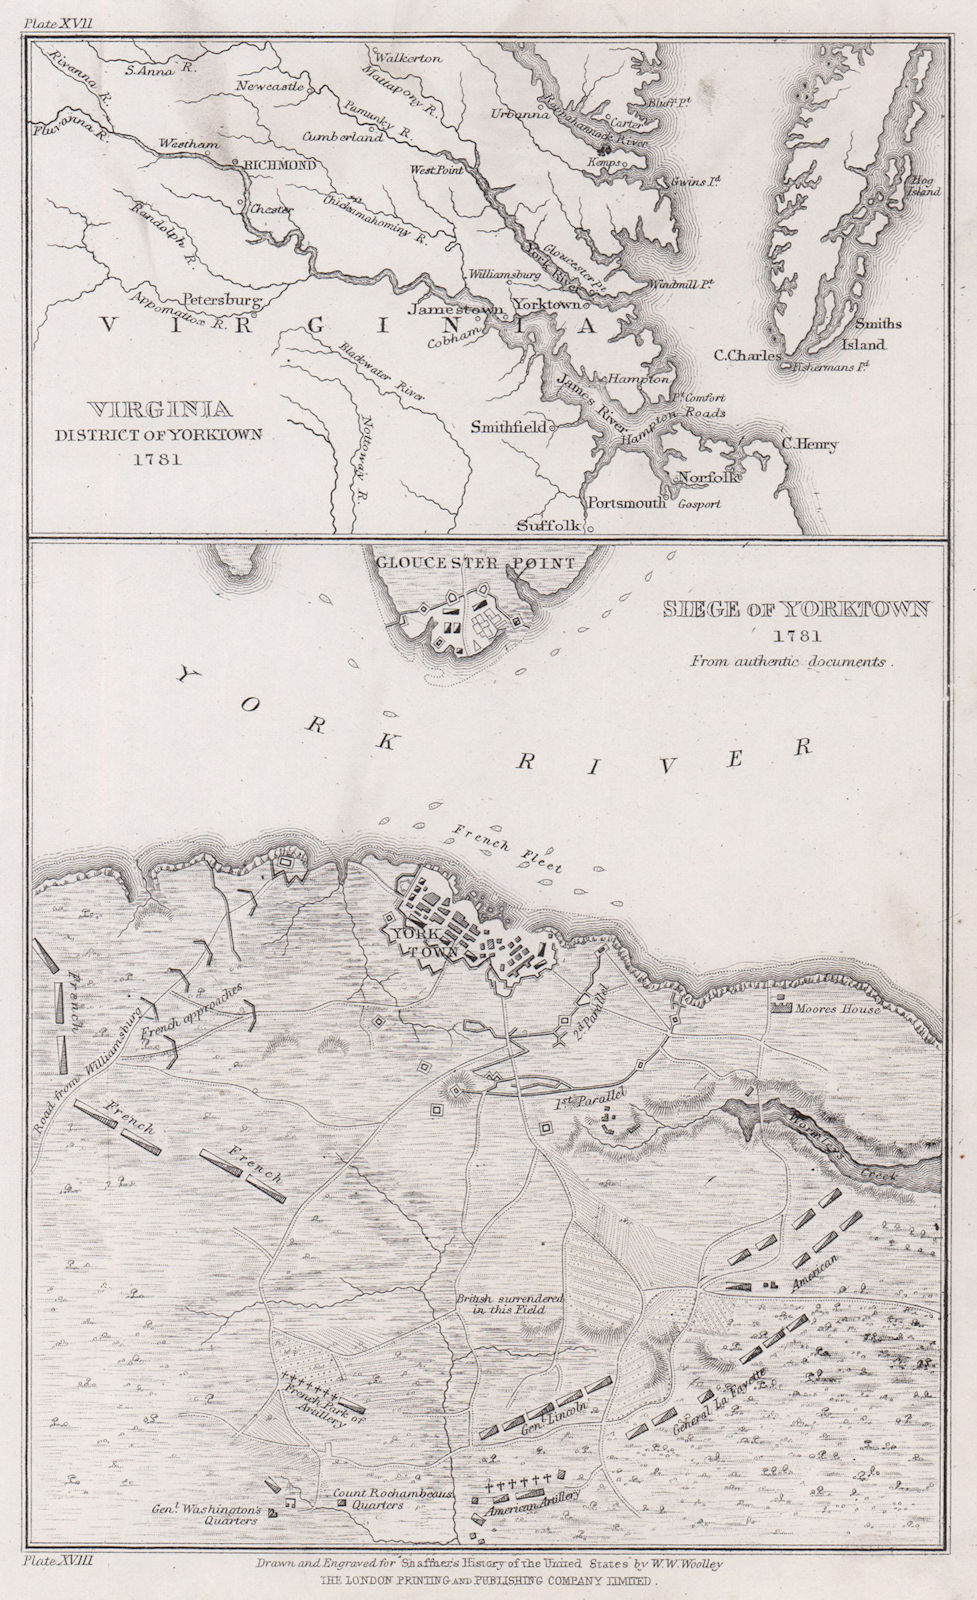 Siege of Yorktown 1781. Virginia environs of Yorktown. WOOLLEY 1863 old map